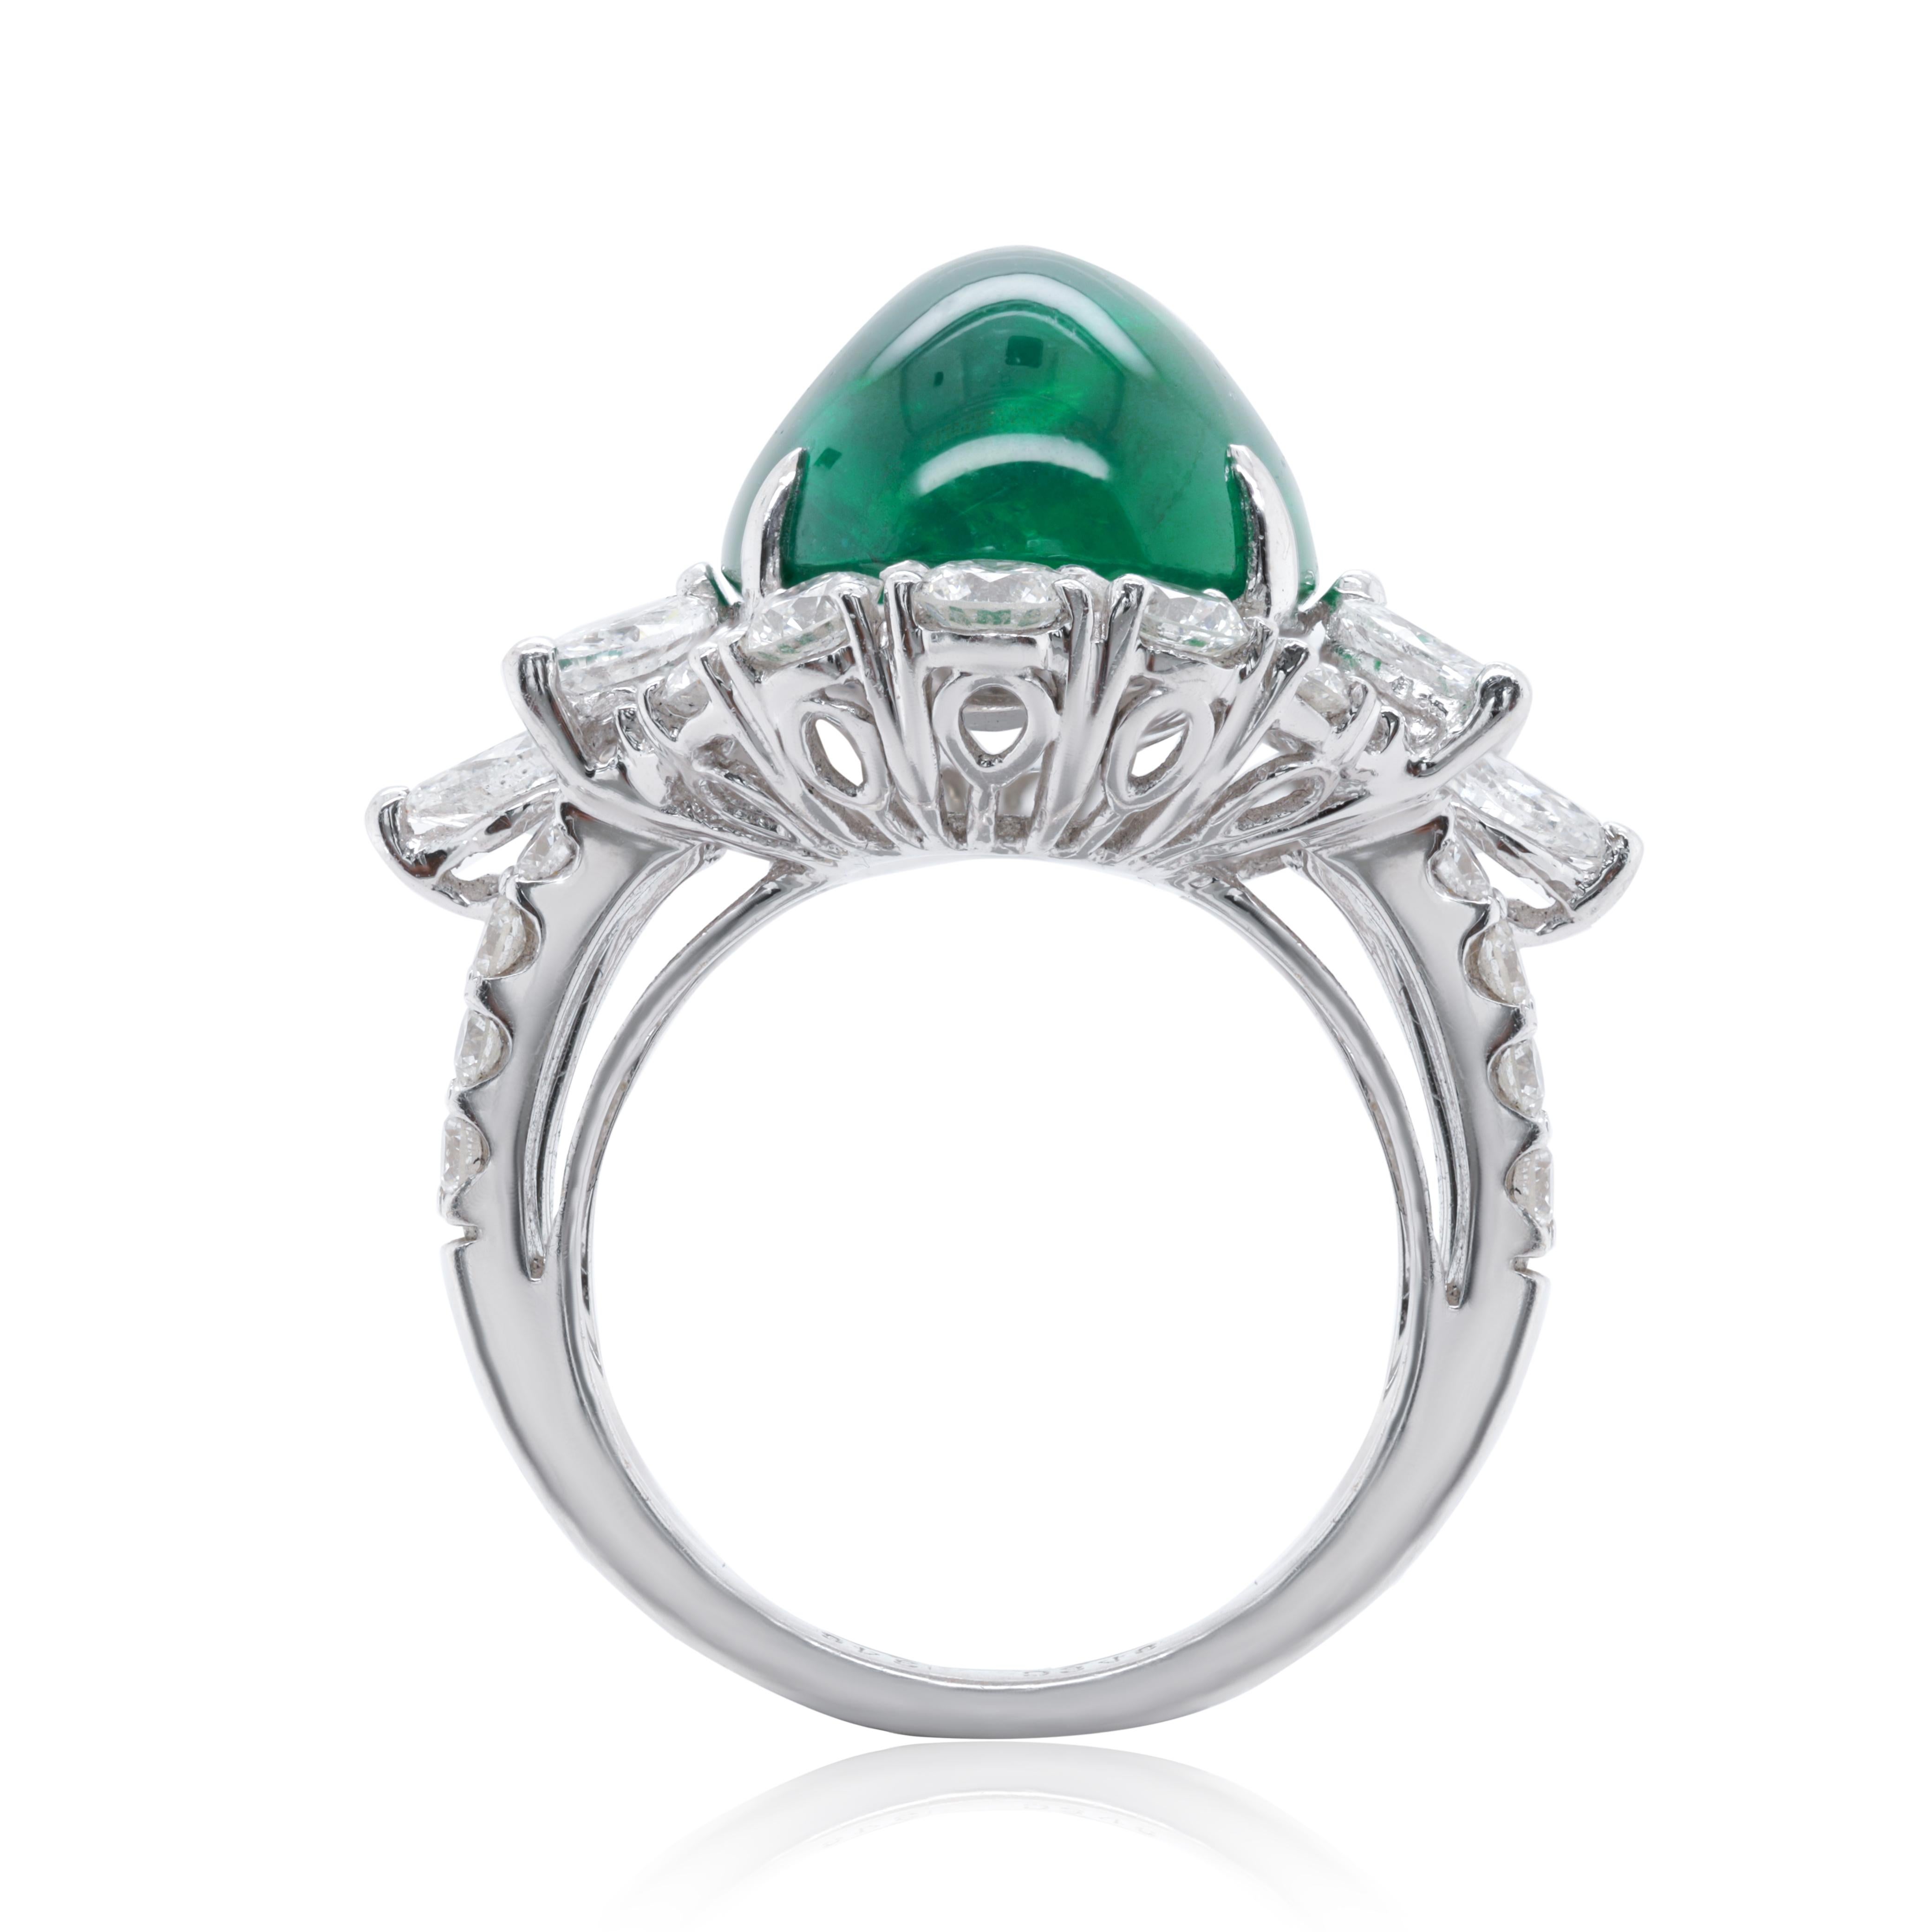 18kt Weißgold, Smaragd und Diamant-Ring, Features 13,39 Karat GIA zertifiziert Smaragd mit 3,46 Karat Diamanten. 
Diana M. ist seit über 35 Jahren ein führender Anbieter von hochwertigem Schmuck.
Diana M ist eine zentrale Anlaufstelle für alle Ihre